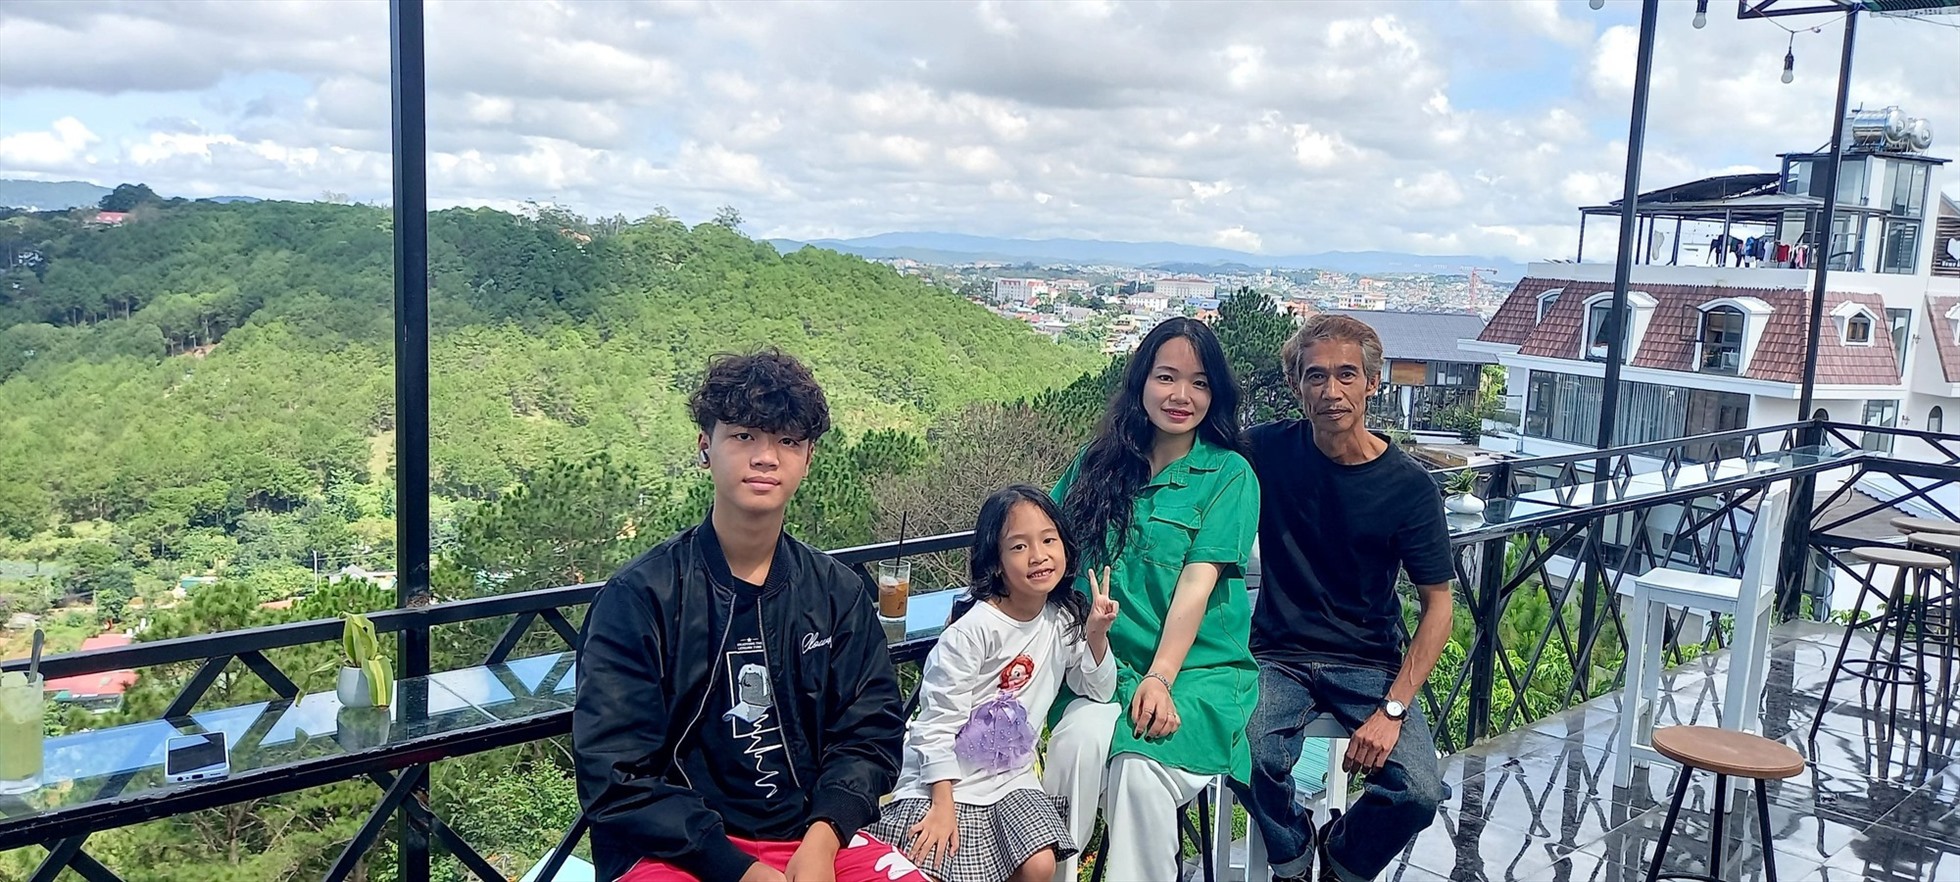 Gia đình NSƯT Phú Đôn cùng nhau đi du lịch.